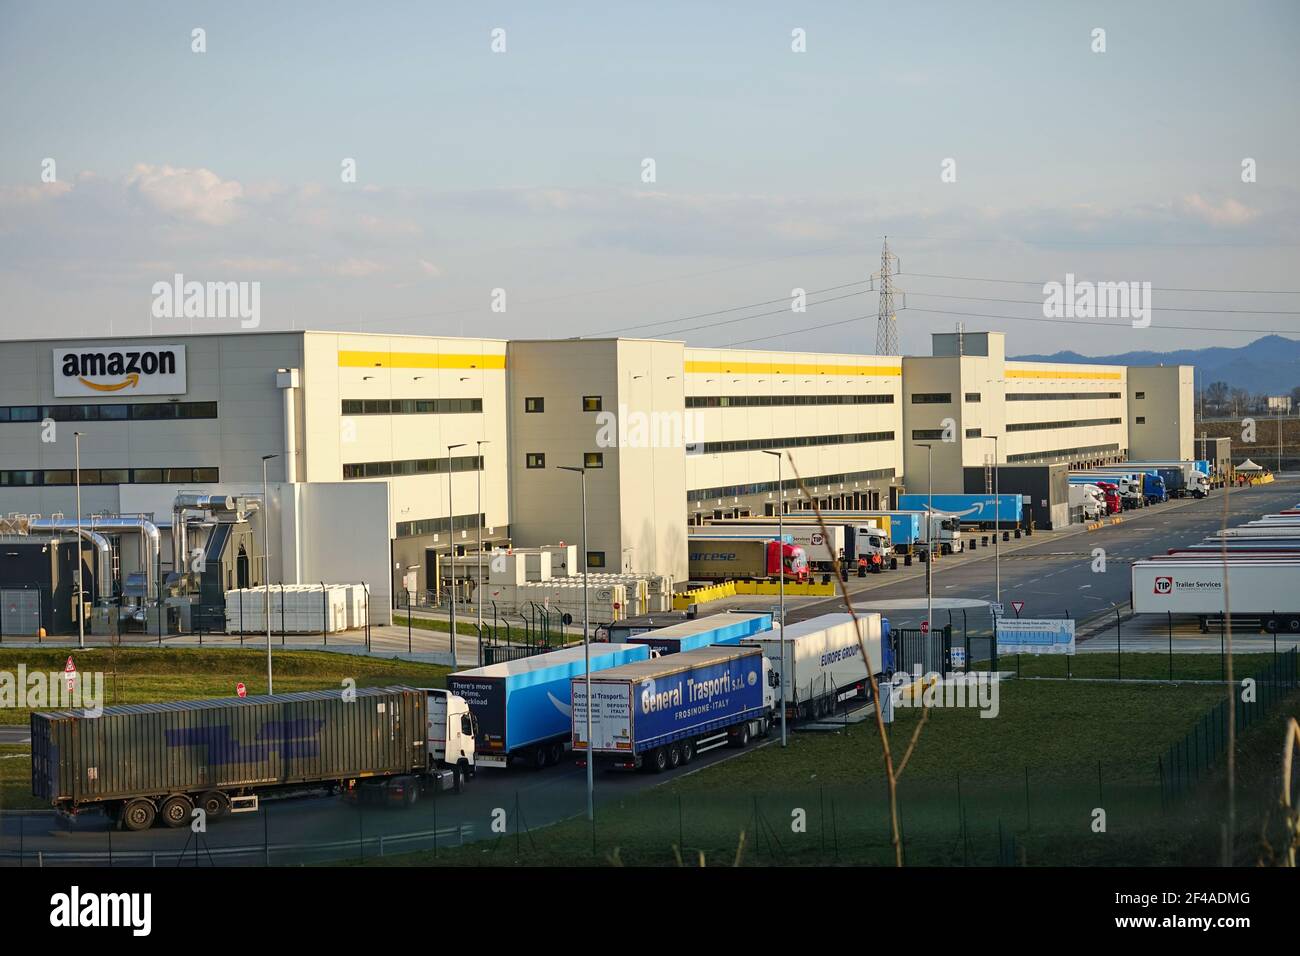 Amazons größtes Vertriebszentrum in Piemont. Torrazza, Italien - März 2021 Stockfoto